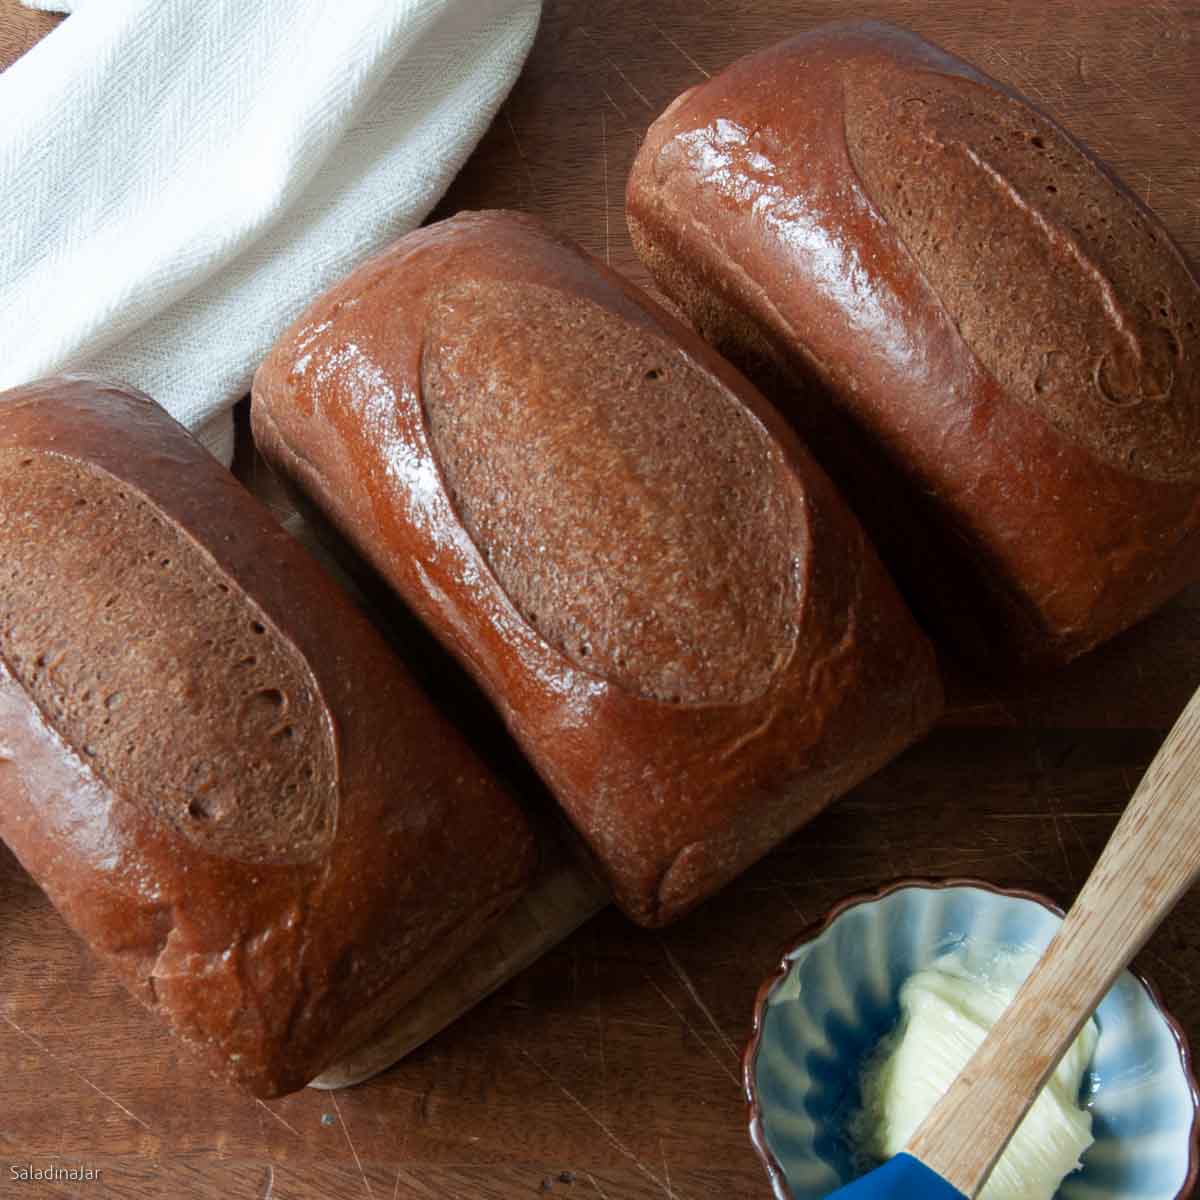 Three mini-loaves of steakhouse bread.